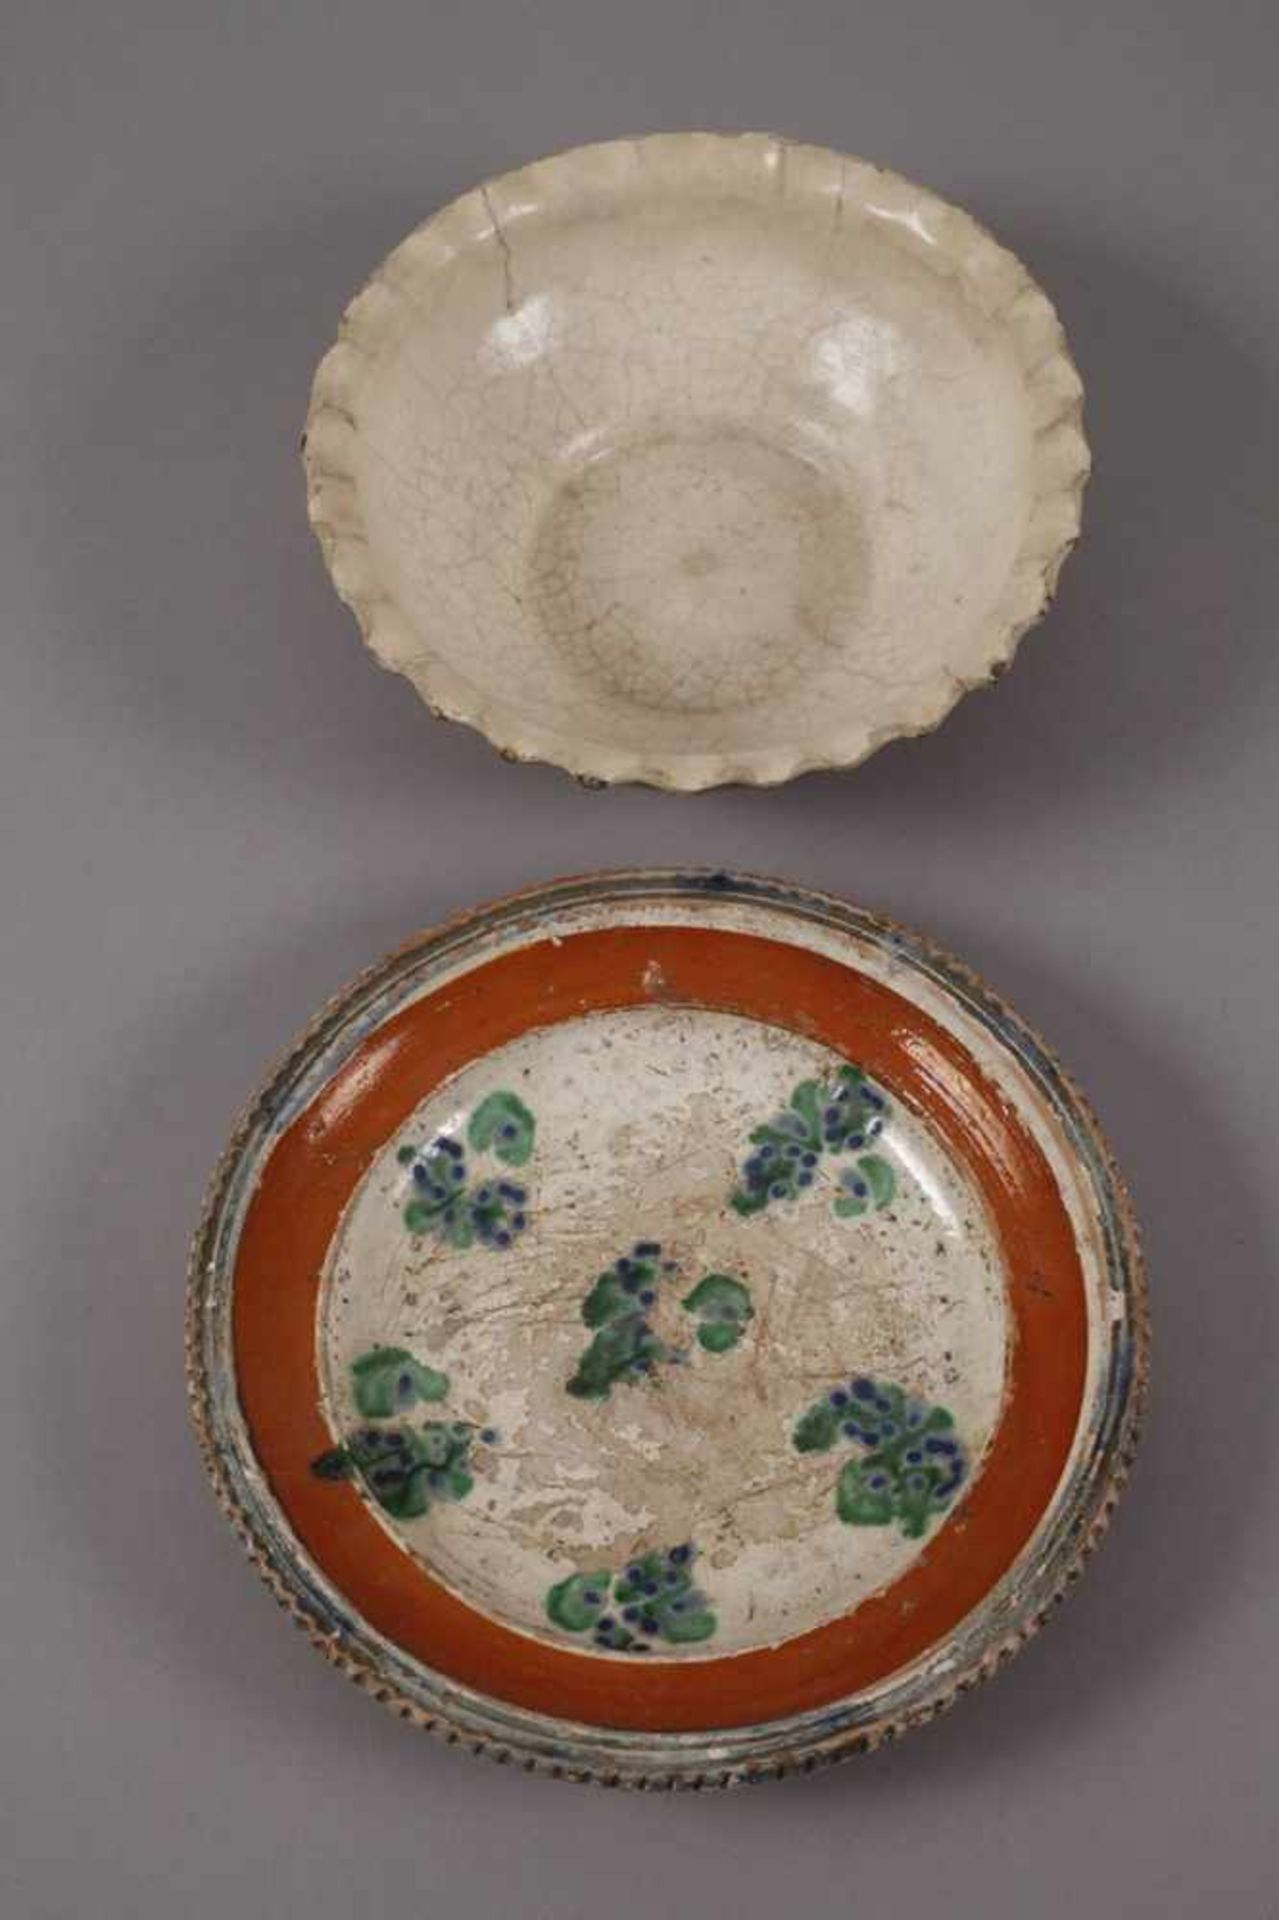 Drei Schalen bäuerliche Keramik19. Jh., Hafnerware mit getupftem Pinseldekor in Türkis und Blau - Bild 3 aus 4